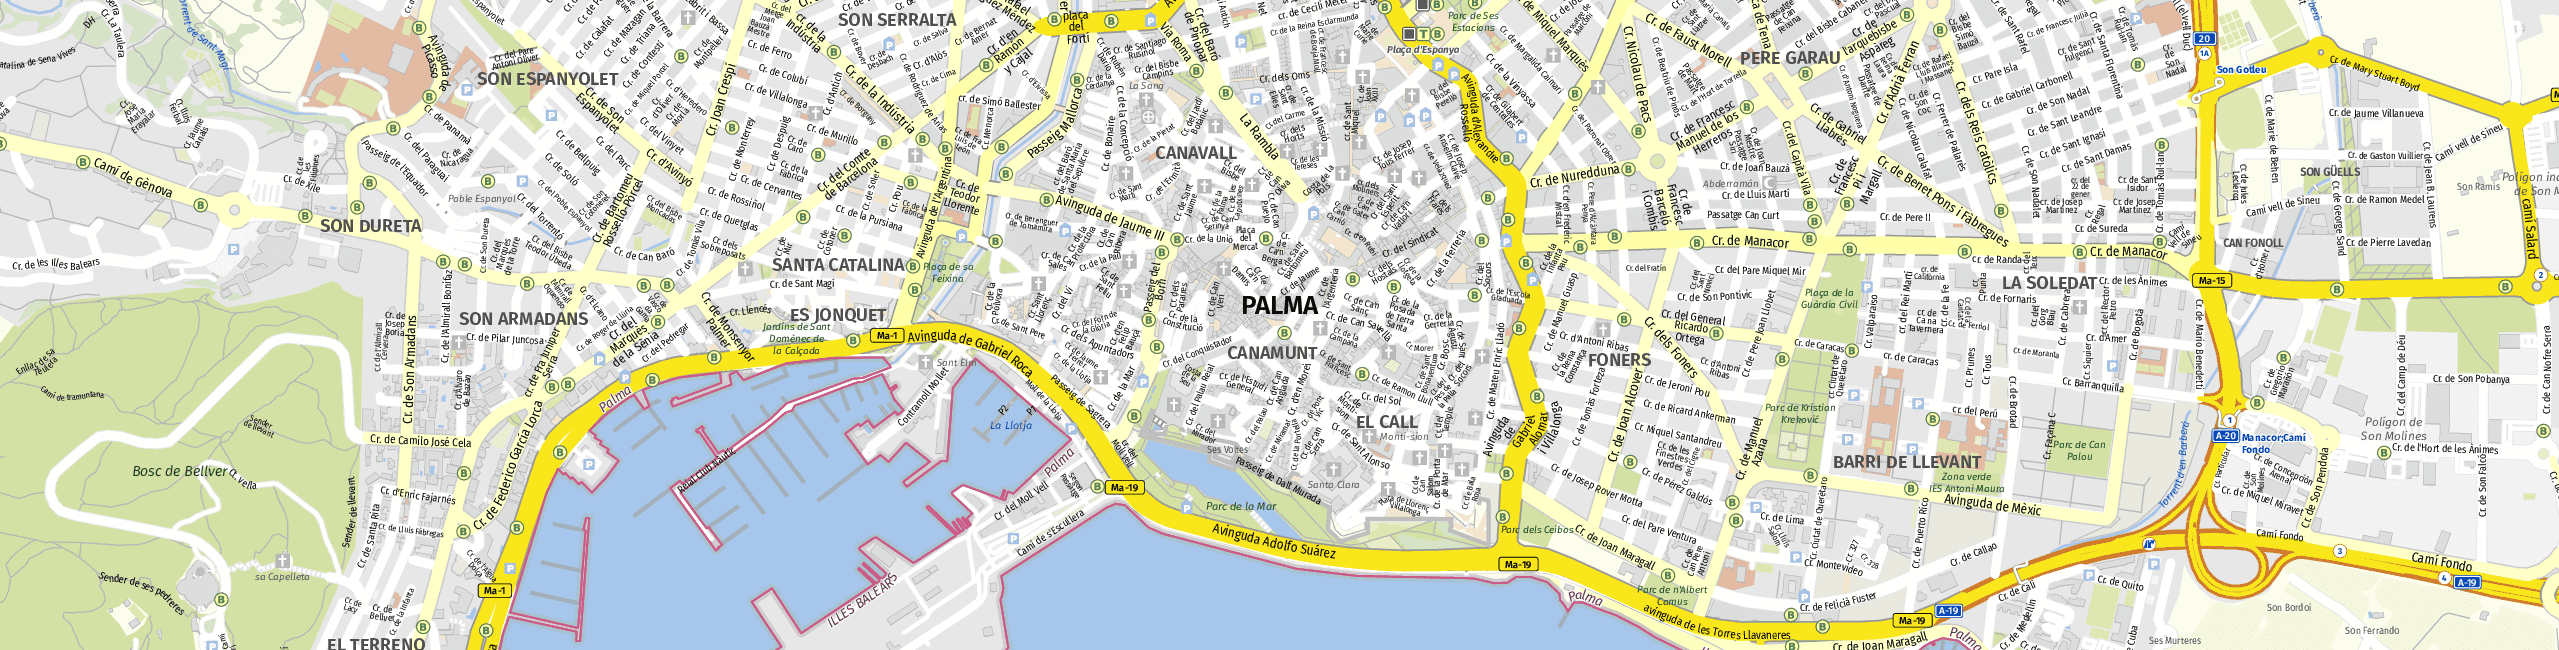 Stadtplan Palma de Mallorca zum Downloaden.